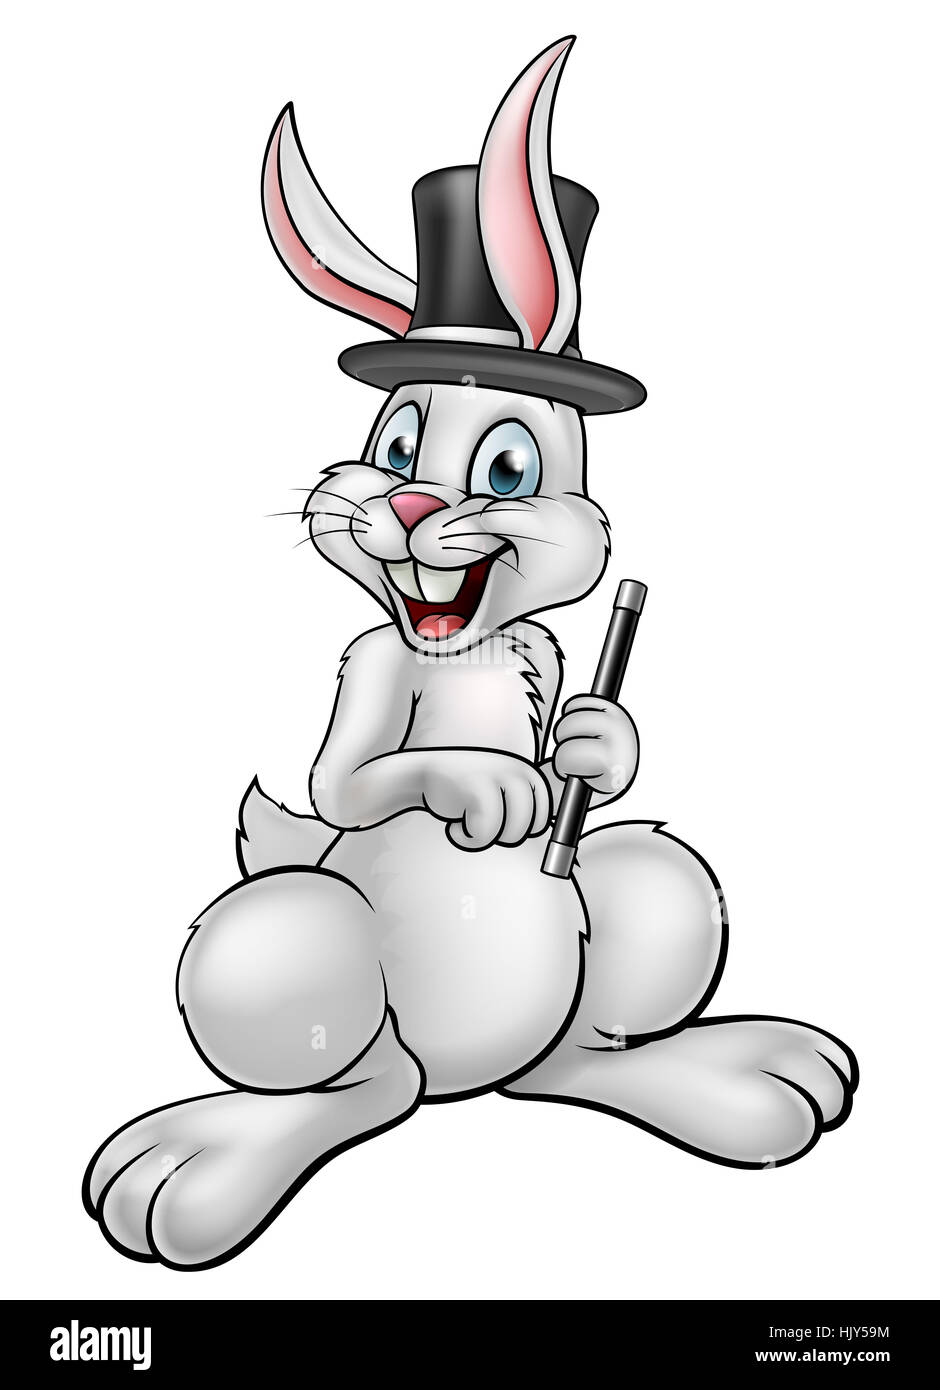 Un dessin animé lapin blanc magicien personnage portant un chapeau et tenant une baguette magique Banque D'Images